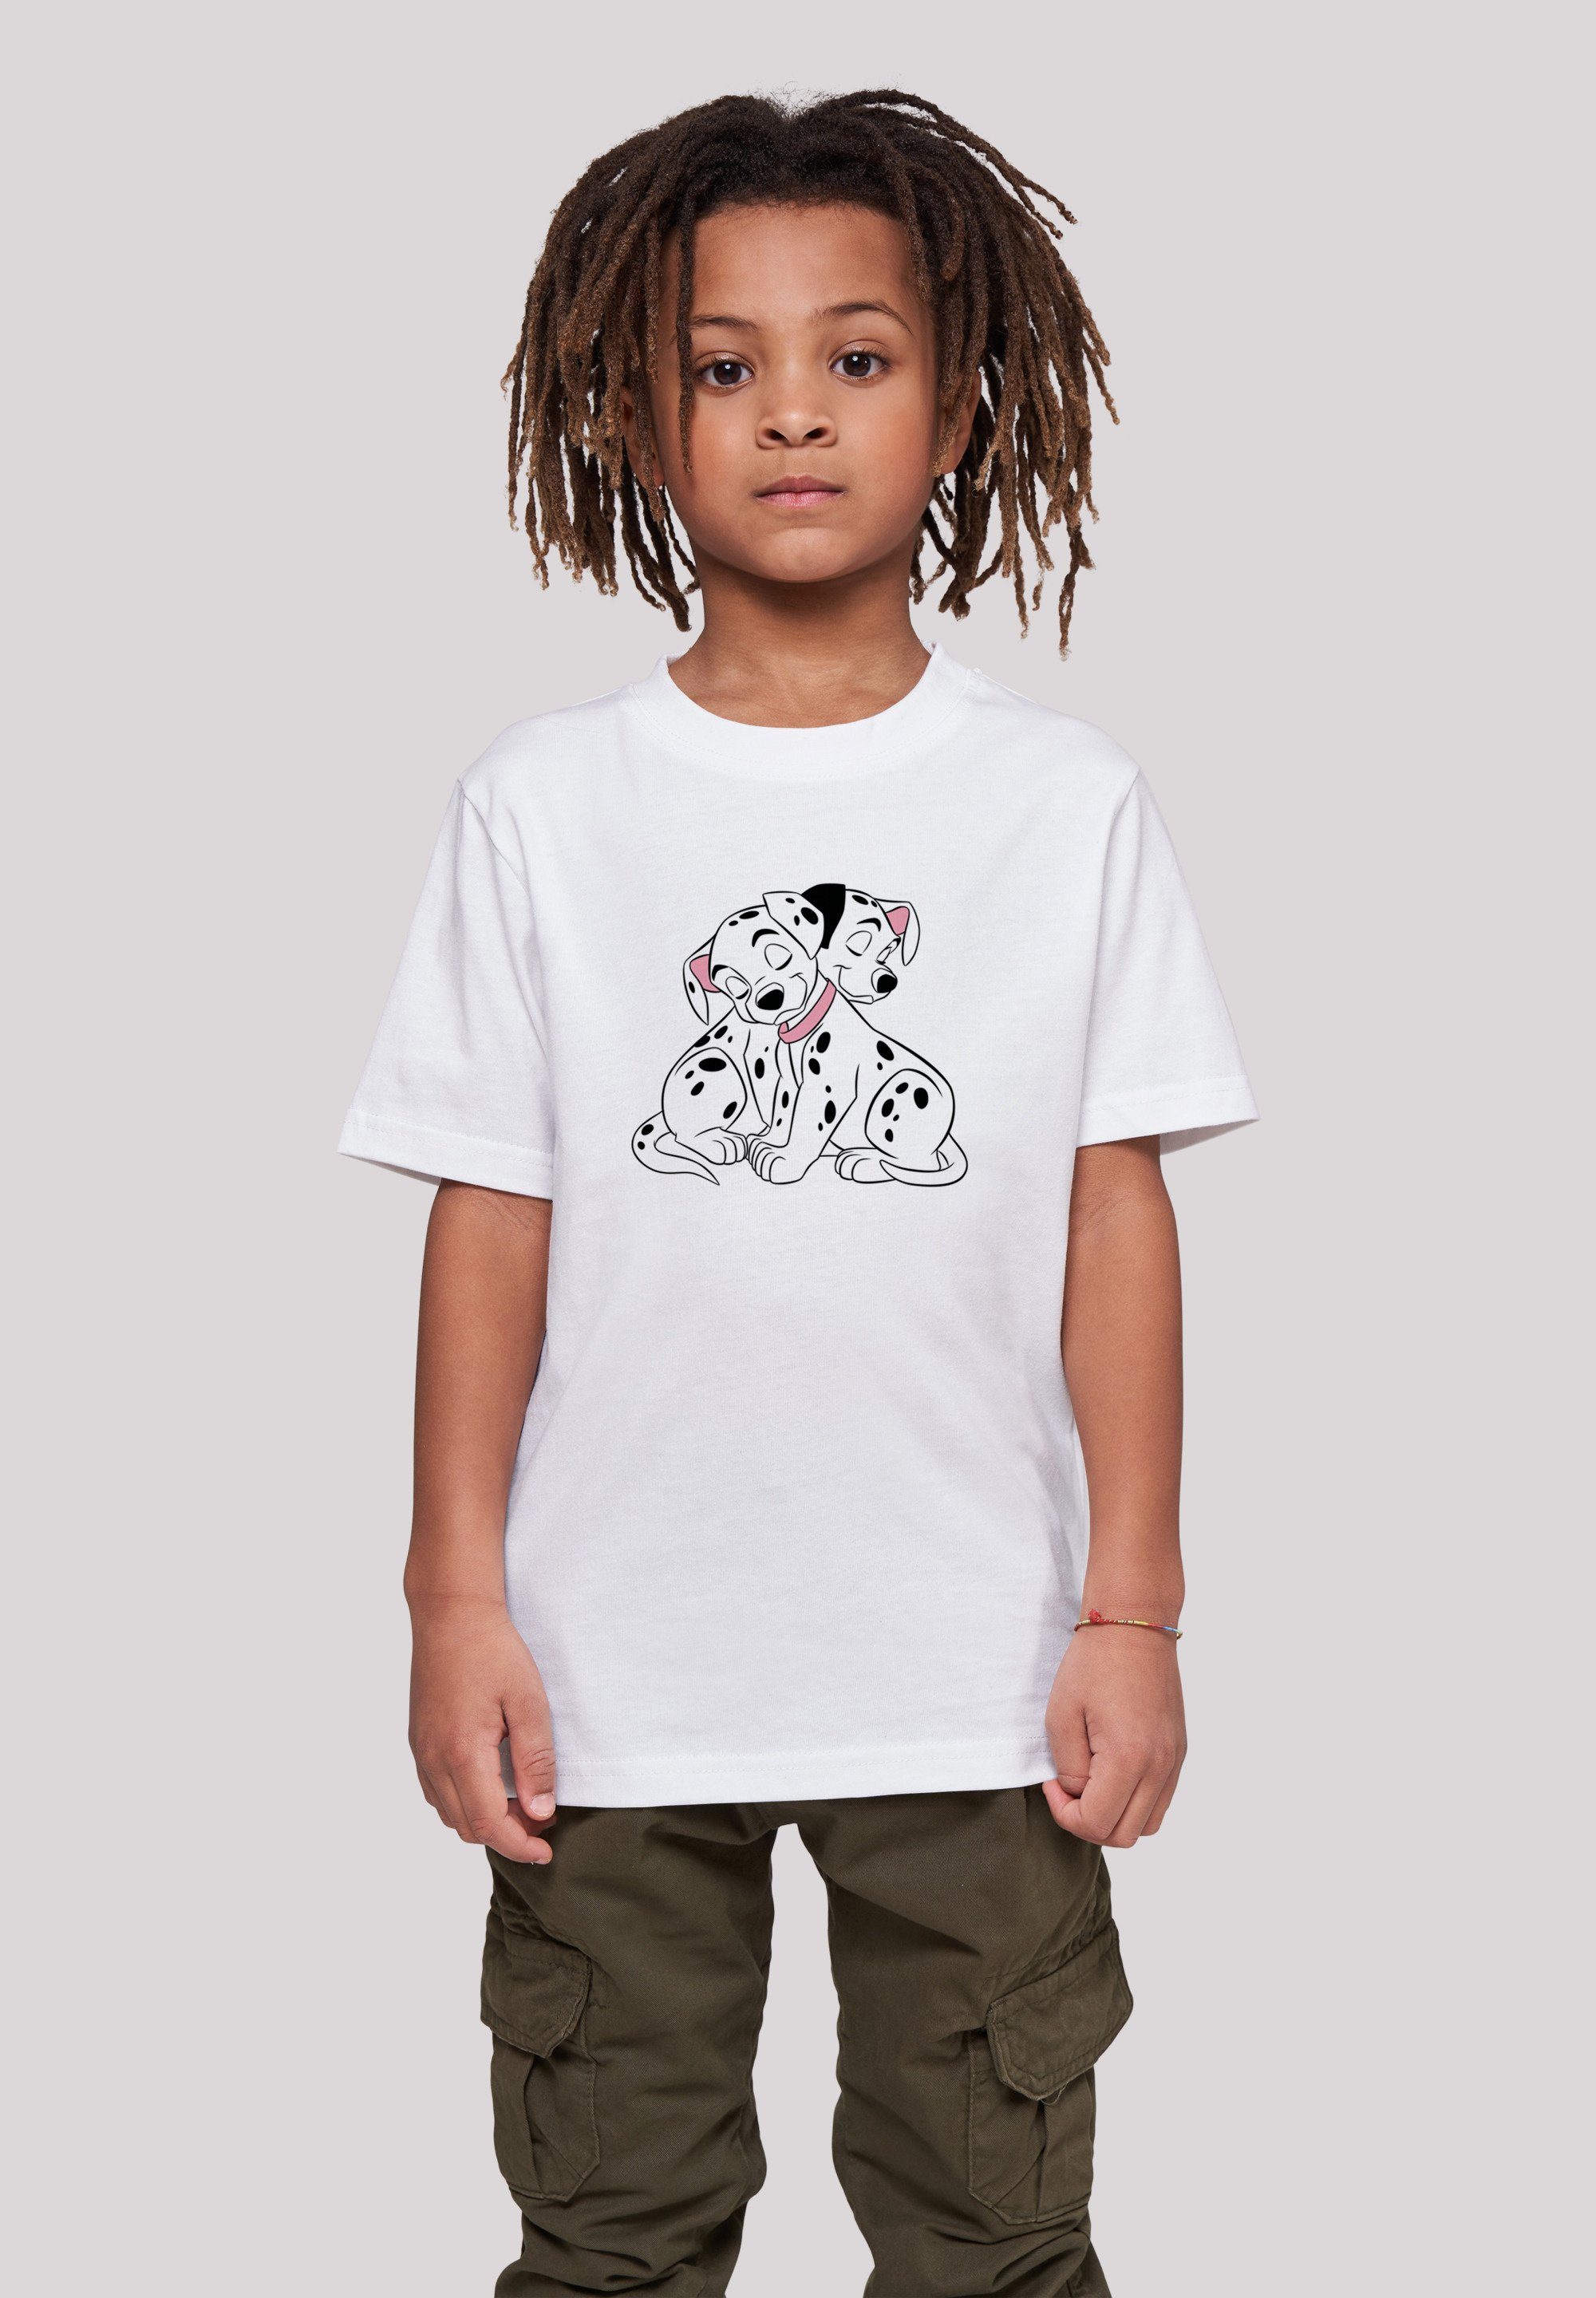 F4NT4STIC T-Shirt Disney 101 Dalmatiner Puppy Love Unisex Kinder,Premium Merch,Jungen,Mädchen,Bedruckt